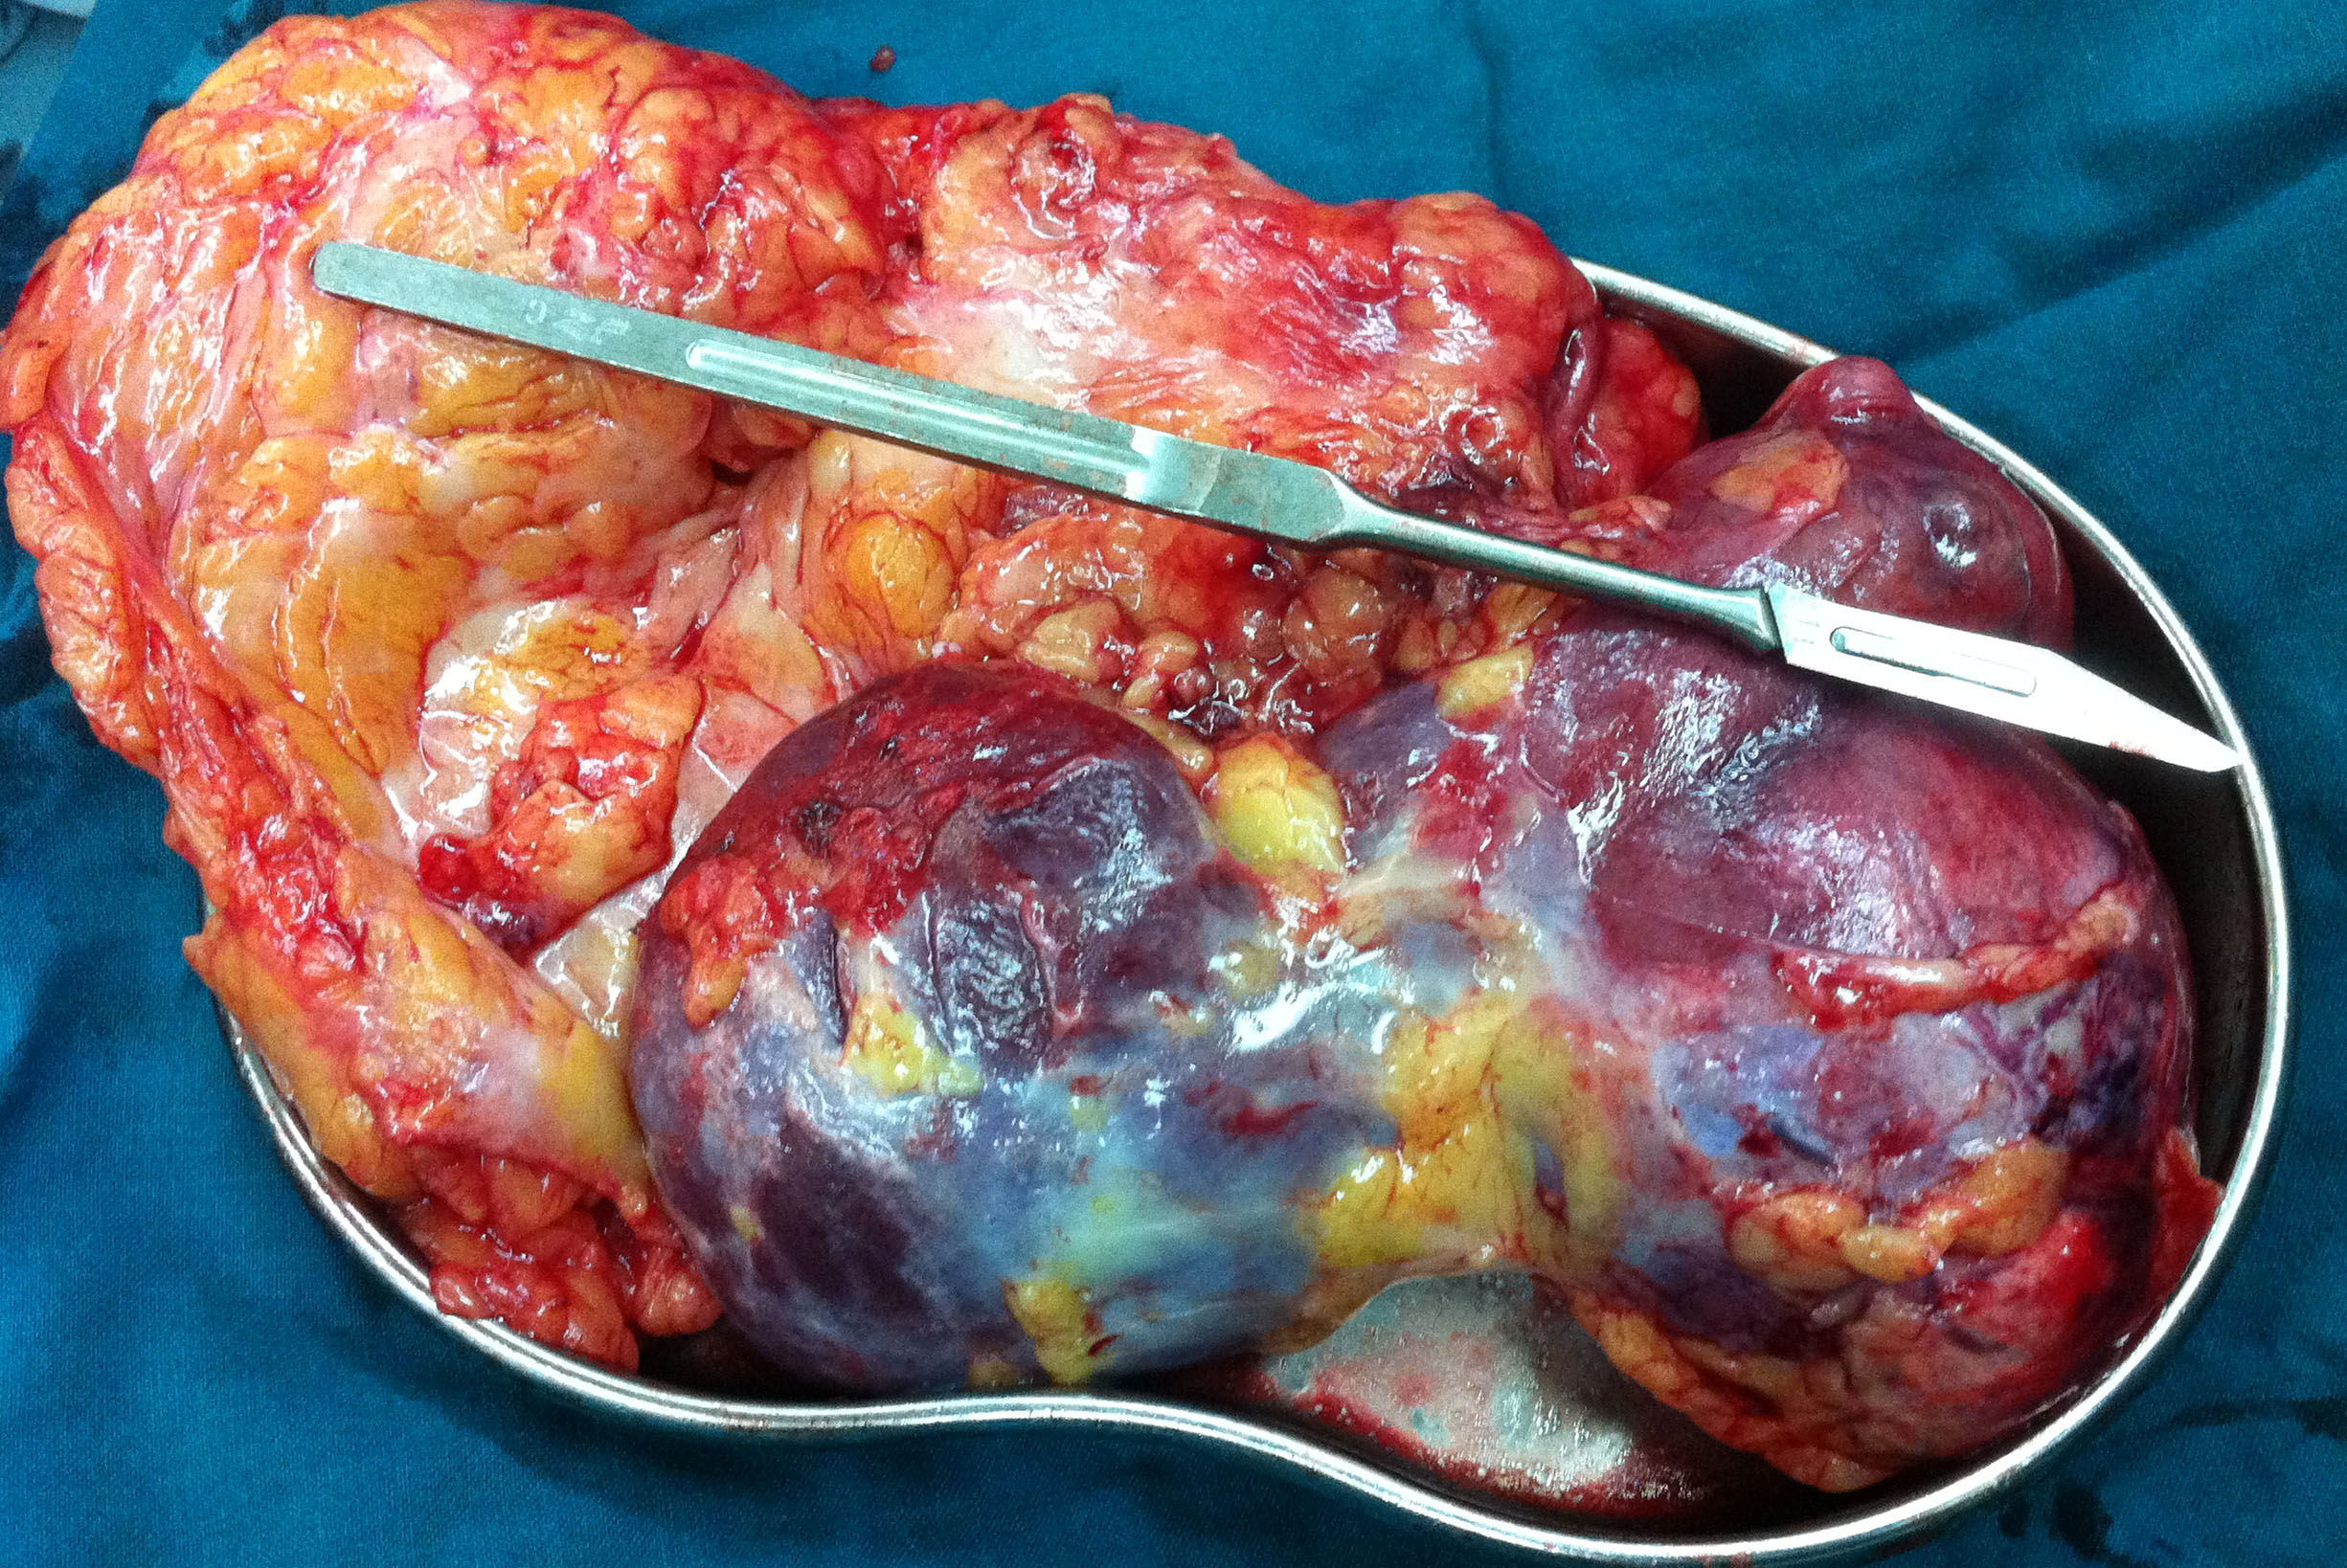 肾癌腹腔镜根治术,术中发现患者腰部空间小,手术困难大,改